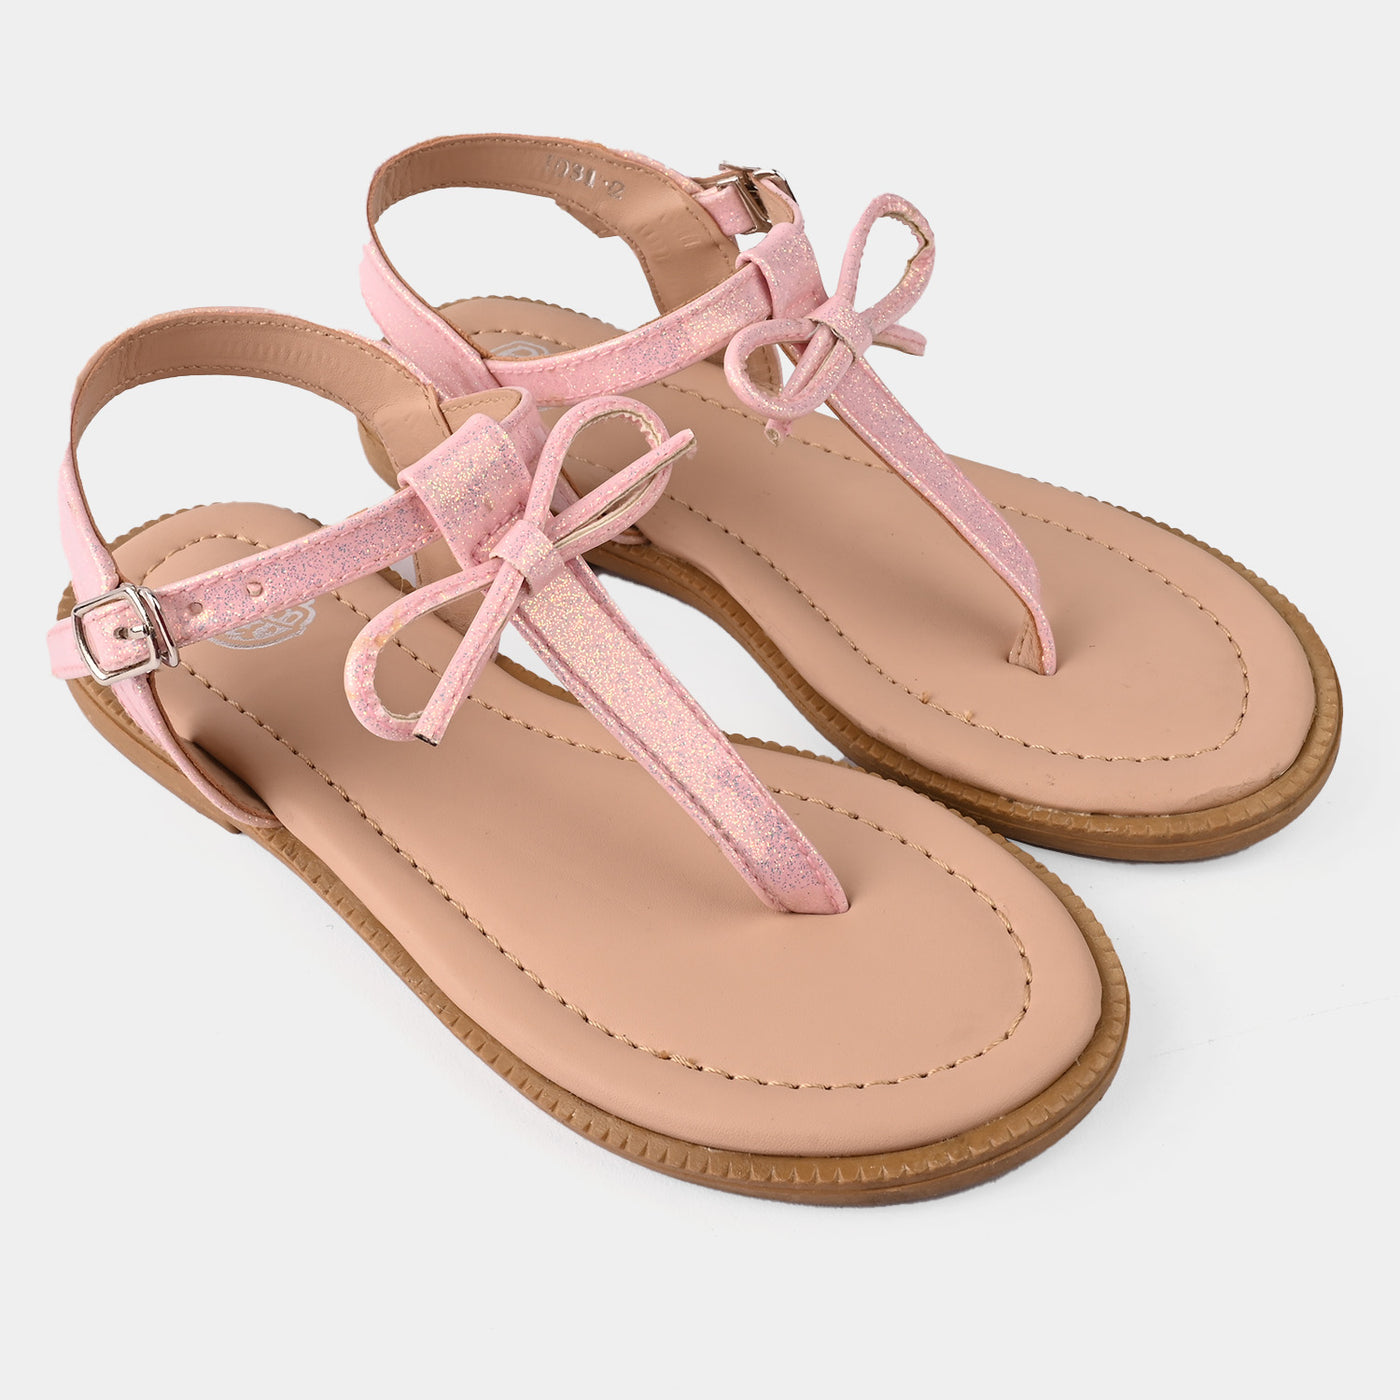 Girls Sandals 1031-2-Pink